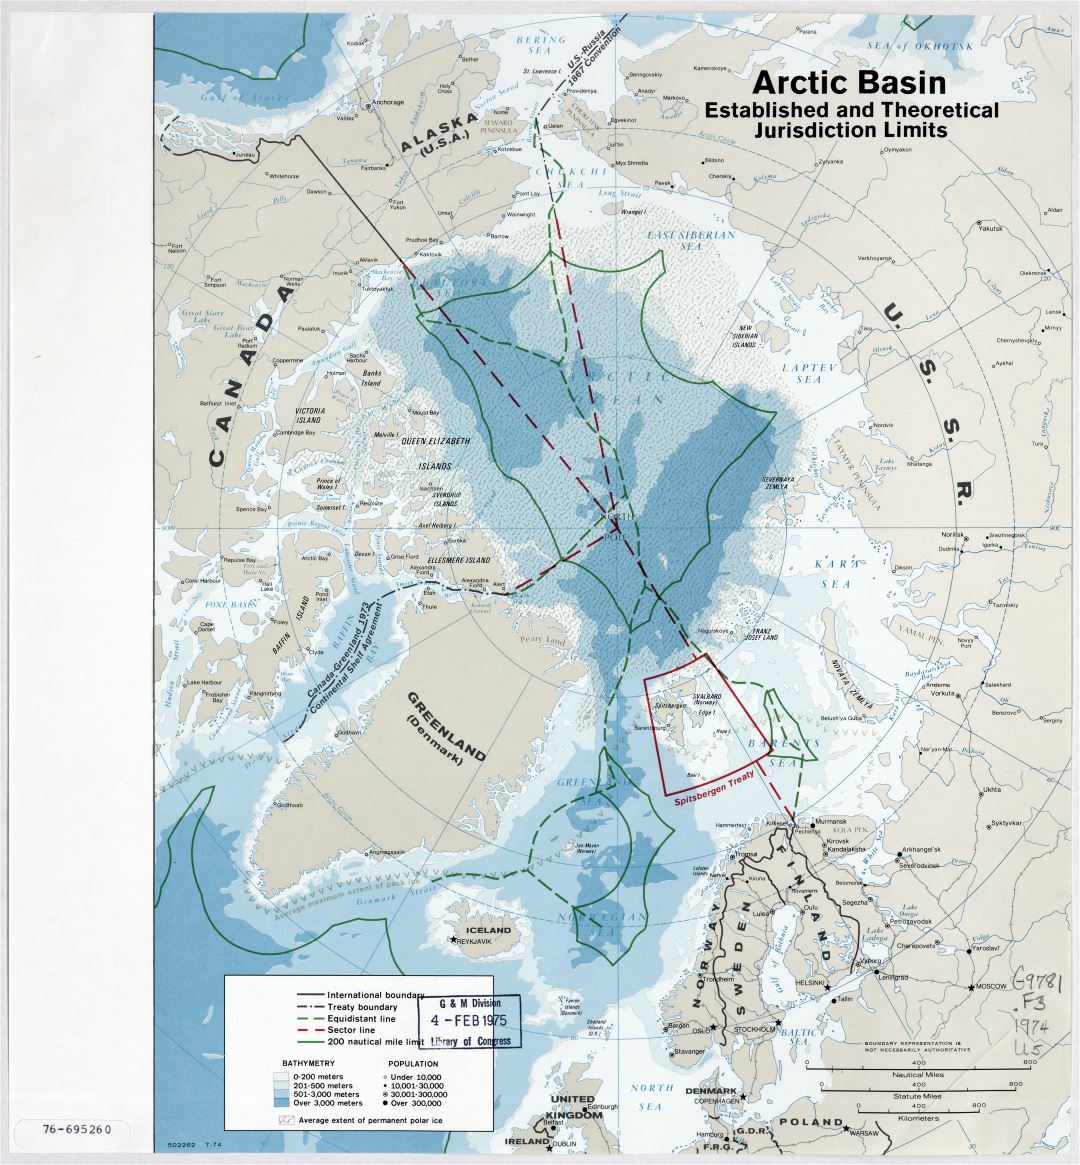 Mapa a gran escala de la cuenca del Ártico, establecido y límites de jurisdicción teóricos - 1974